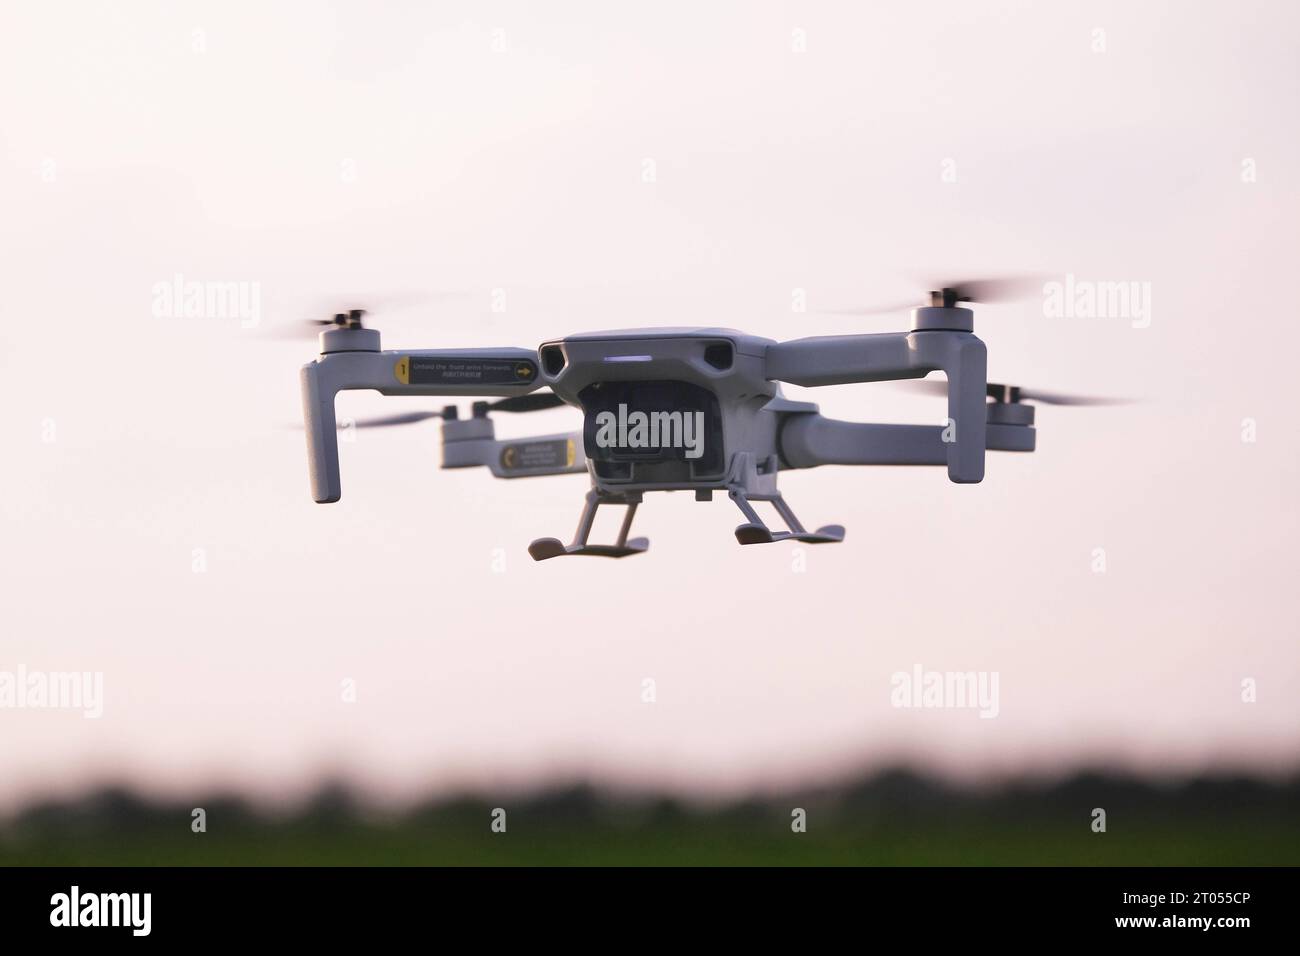 Drohnenverortnung-Quadrocopter,Drohne in Aktion Drohnenverordnung-Quadrocopter in Aktion *** Drone ordinance quadrocopter,drone in action drone ordinance quadrocopter in action Stock Photo